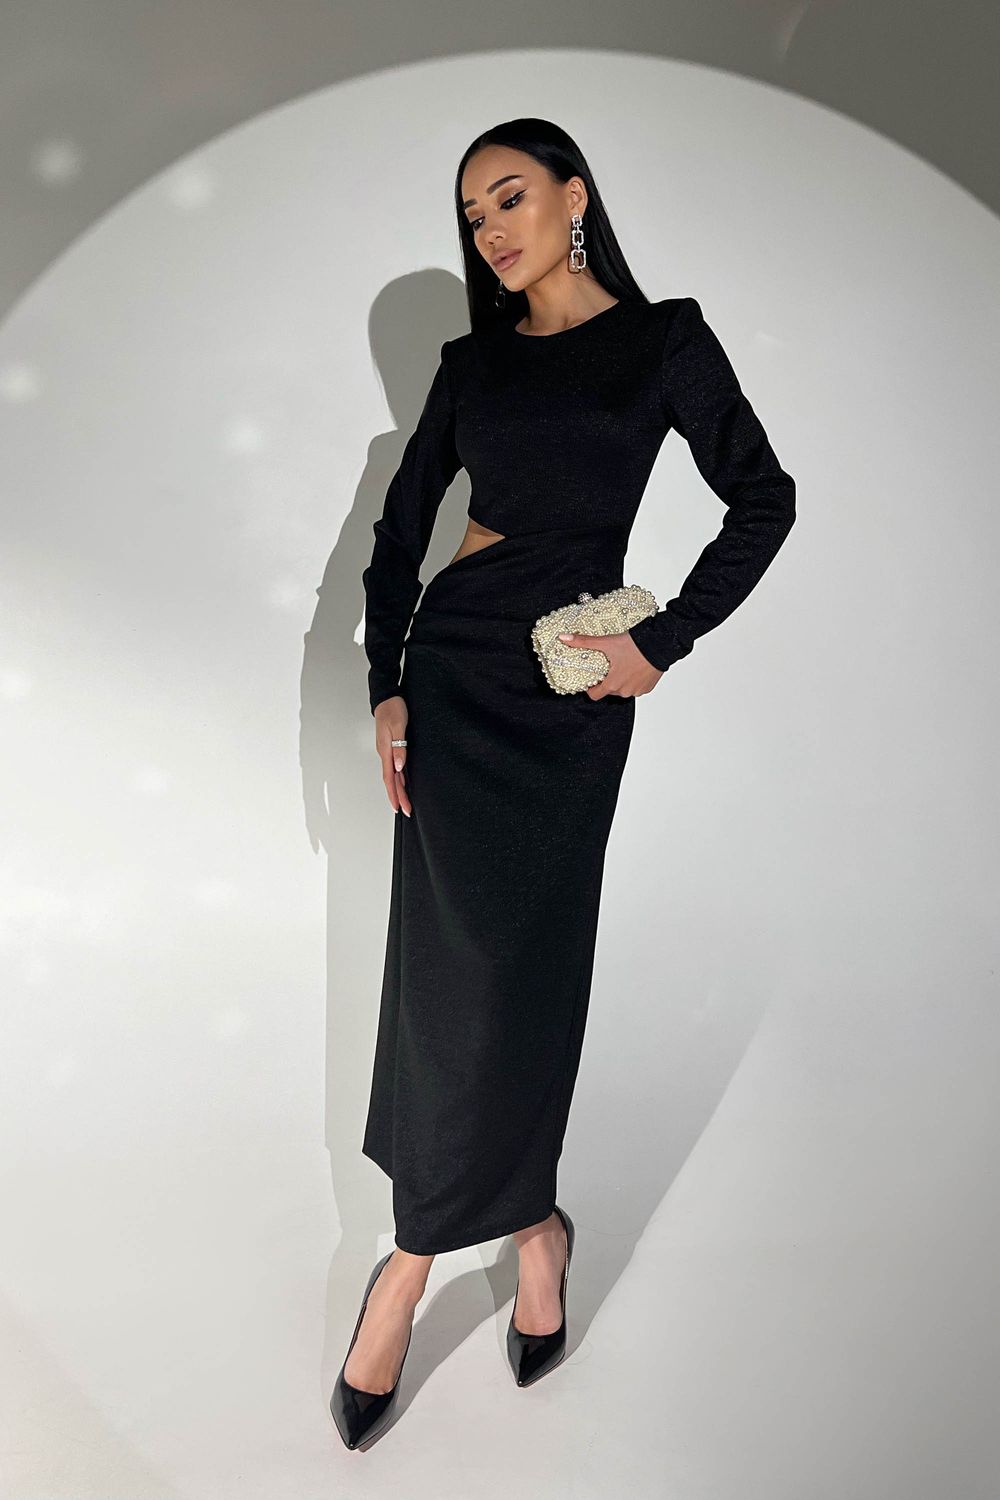 Шикарное новогоднее платье черного цвета с люрексом - фото